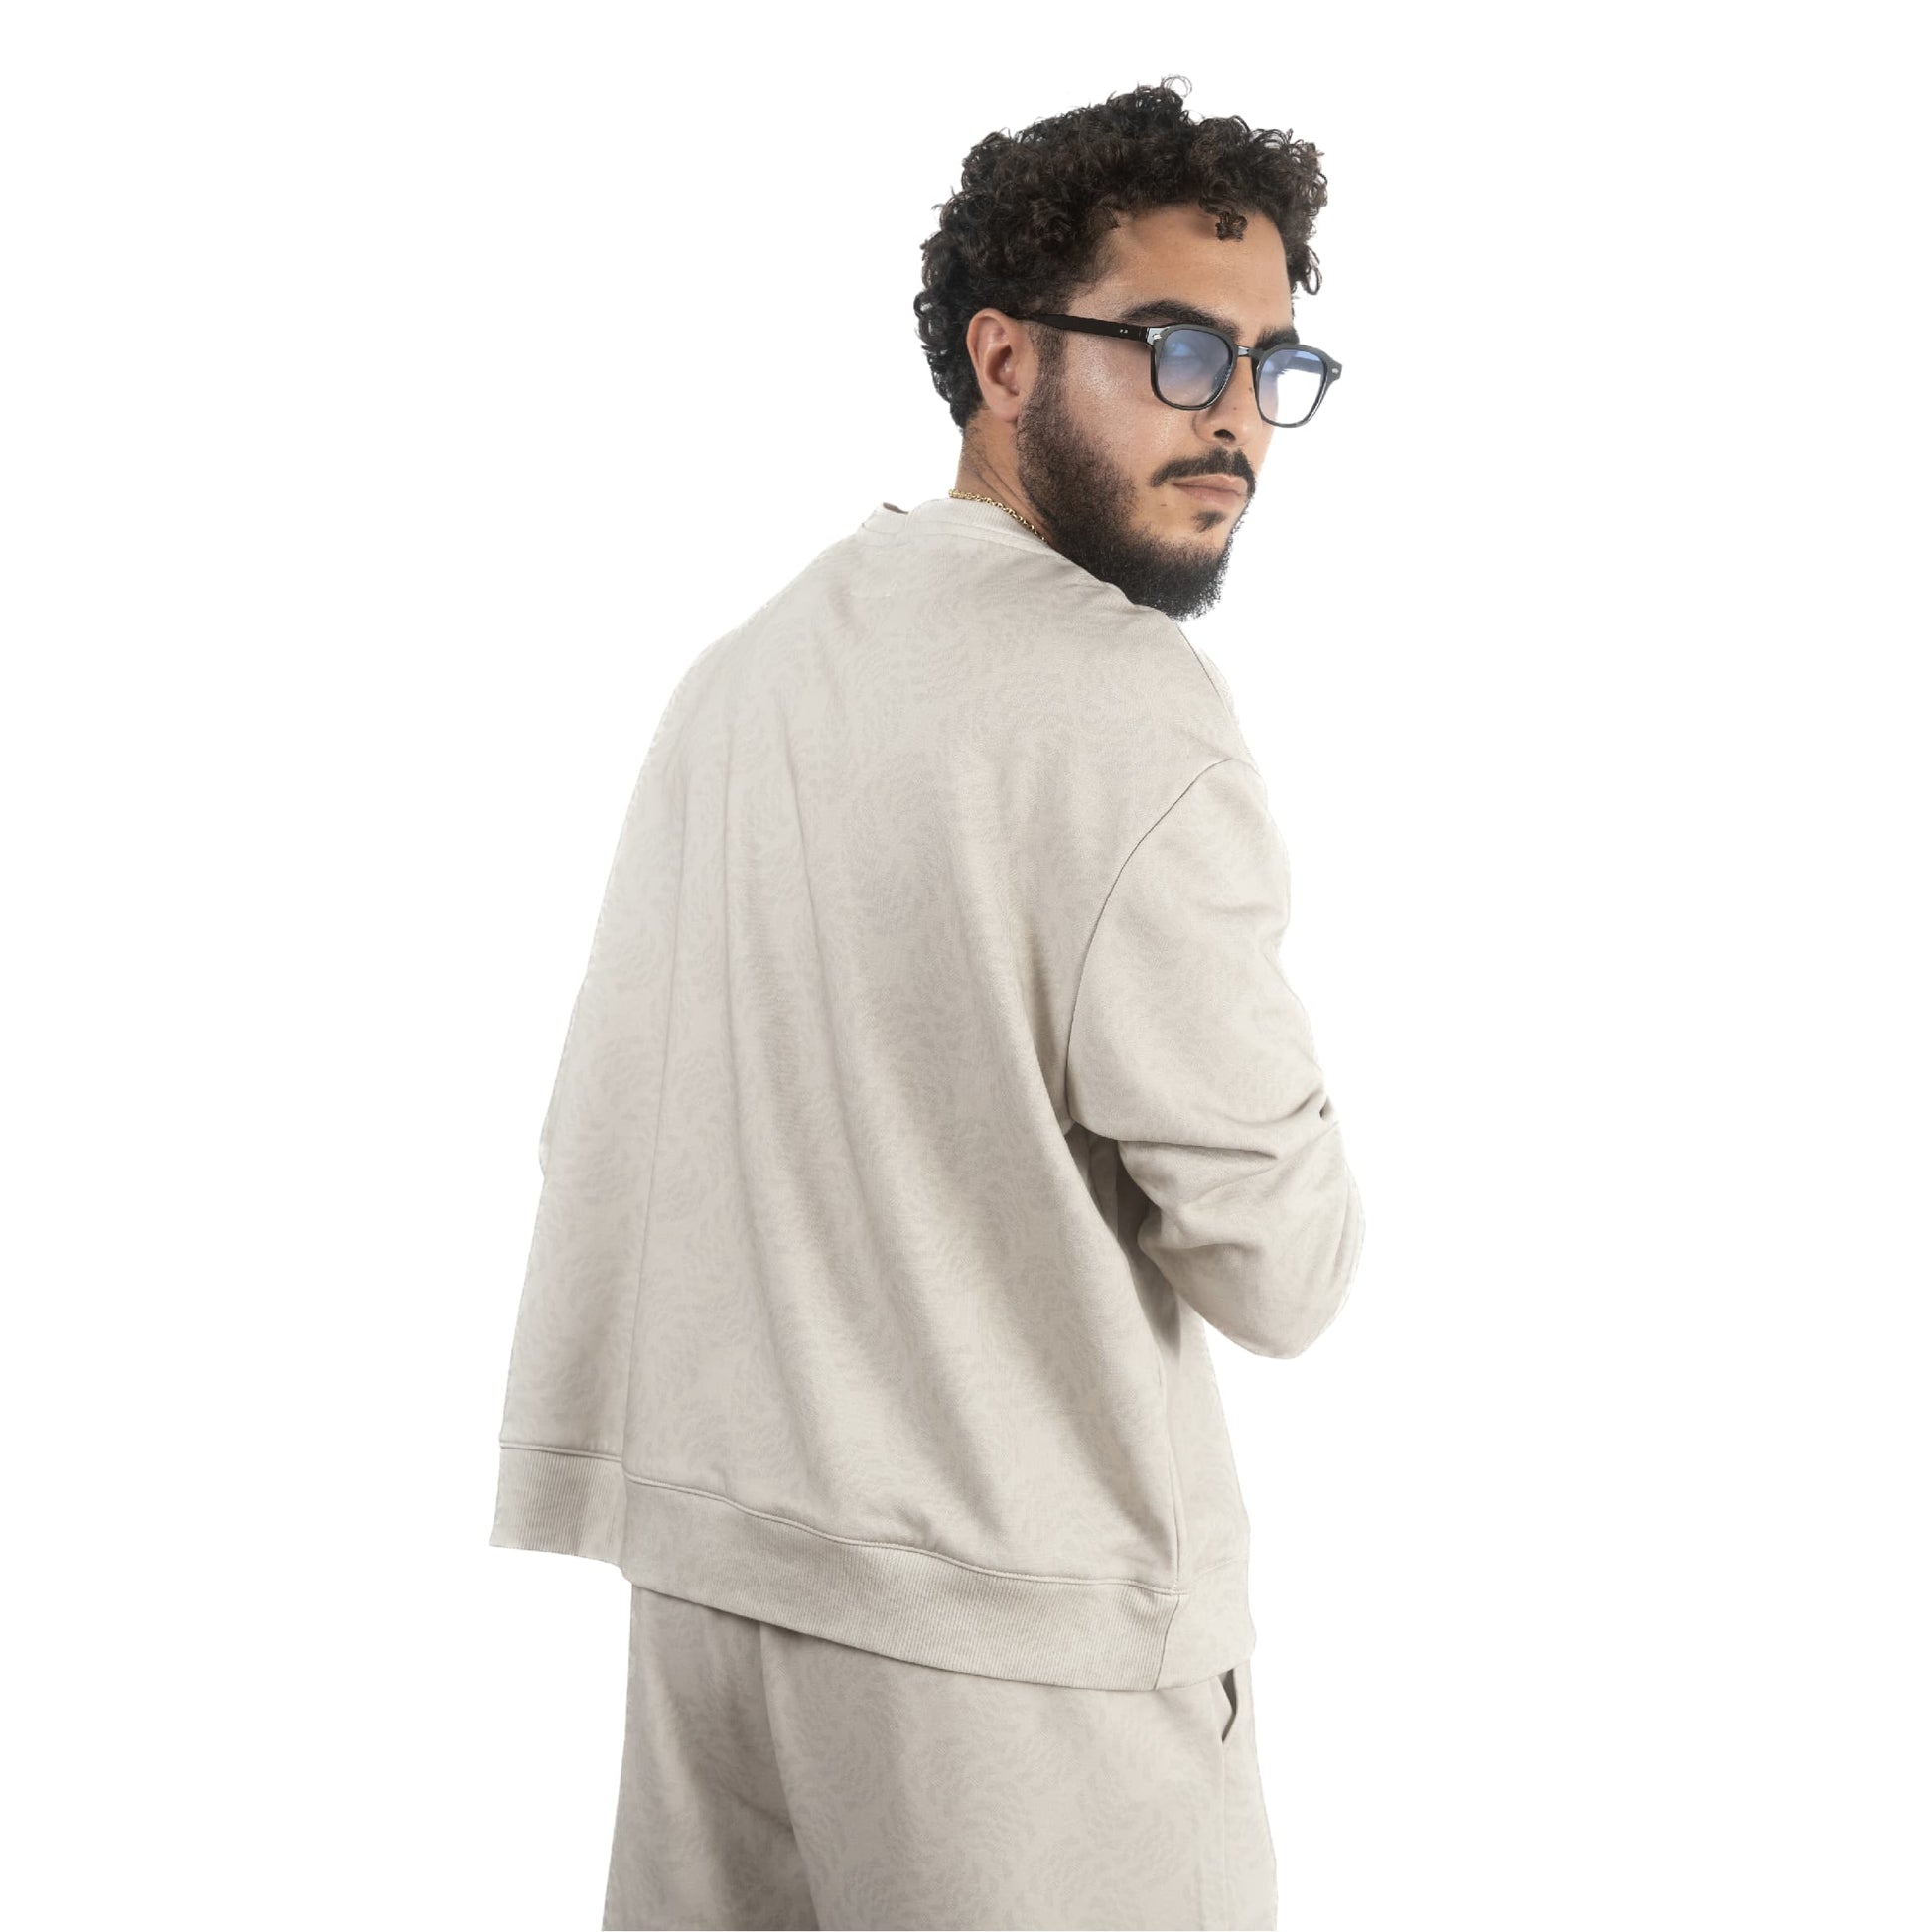 lucewear: homme portant un sweatshirt imprimé mixte taupe